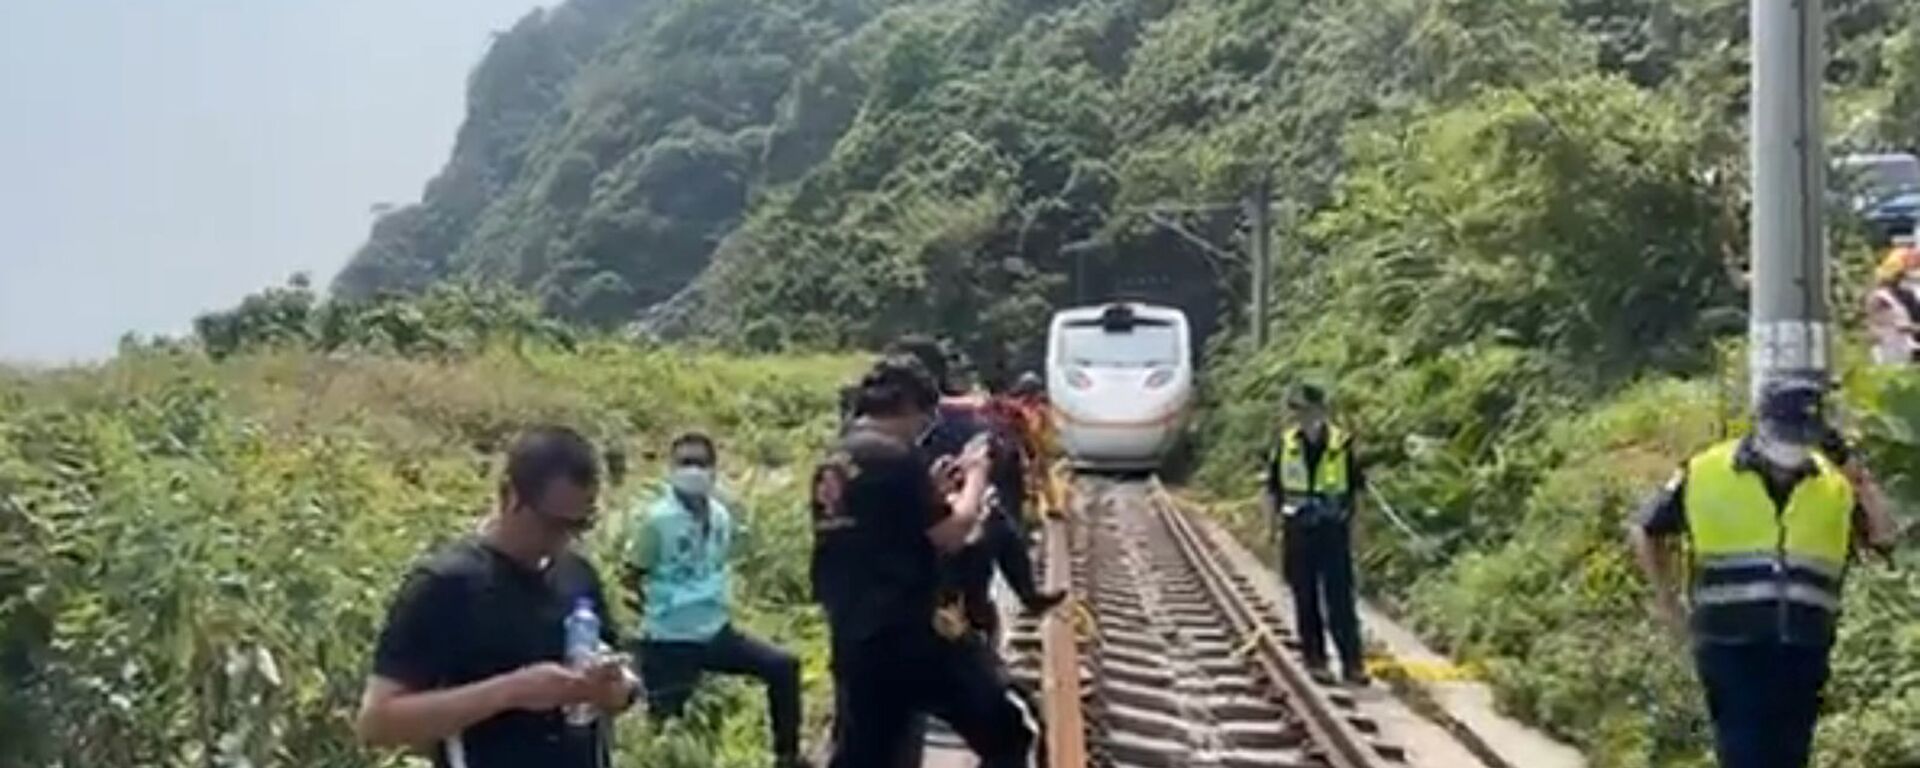 Спасатели на месте крушения поезда в туннеле в горах Хуалянь (2 апреля 2021). Восточный Тайвань - Sputnik Արմենիա, 1920, 02.04.2021